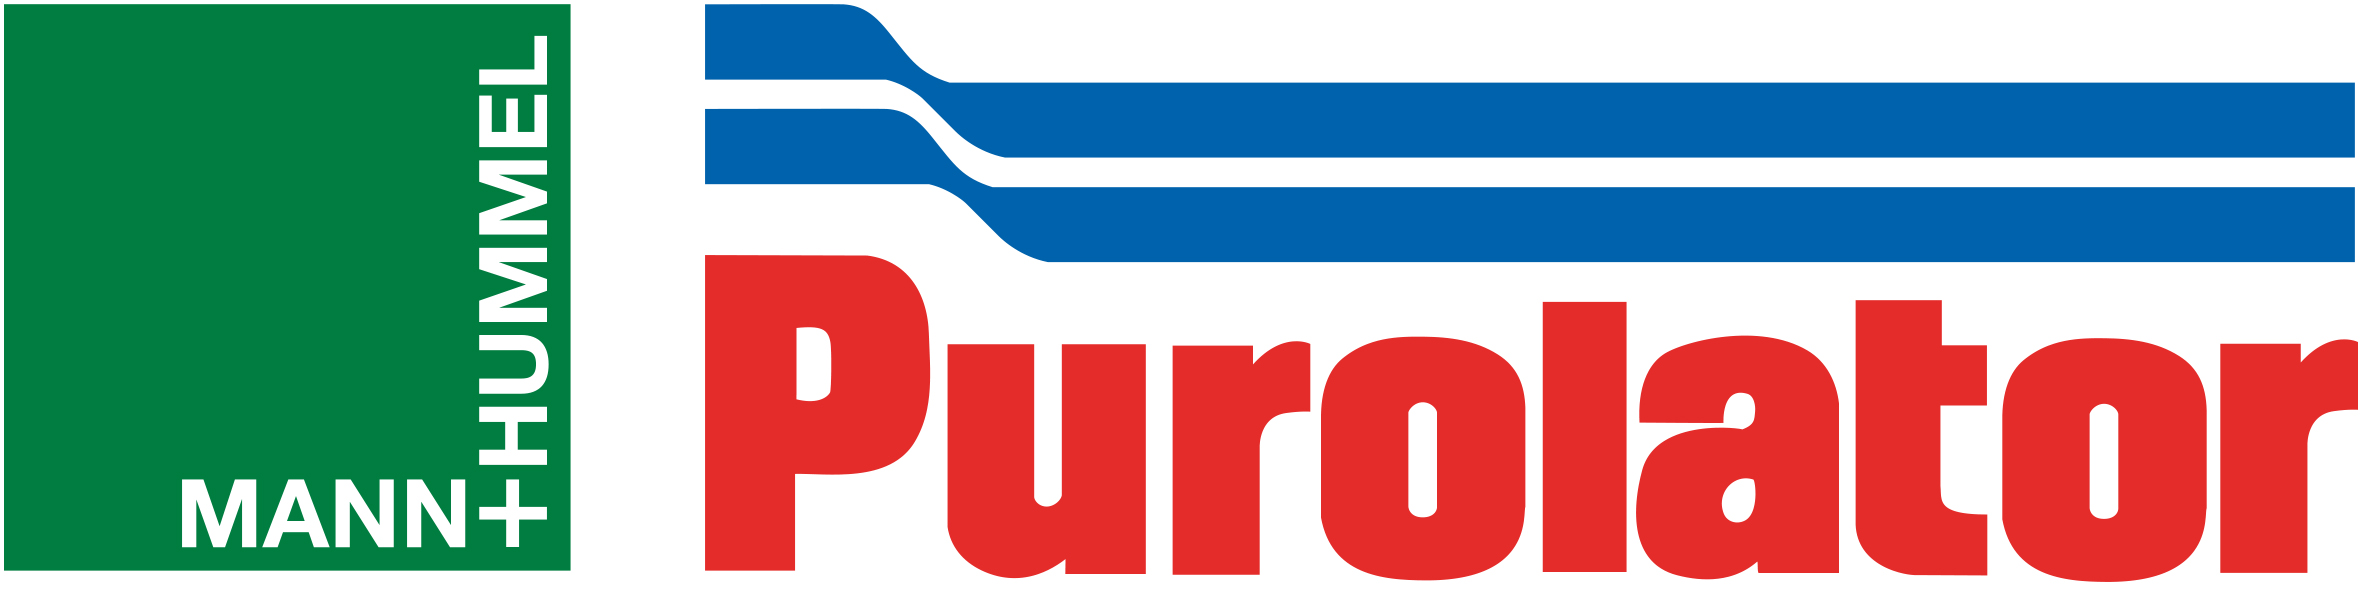 Purolator Logo photo - 1